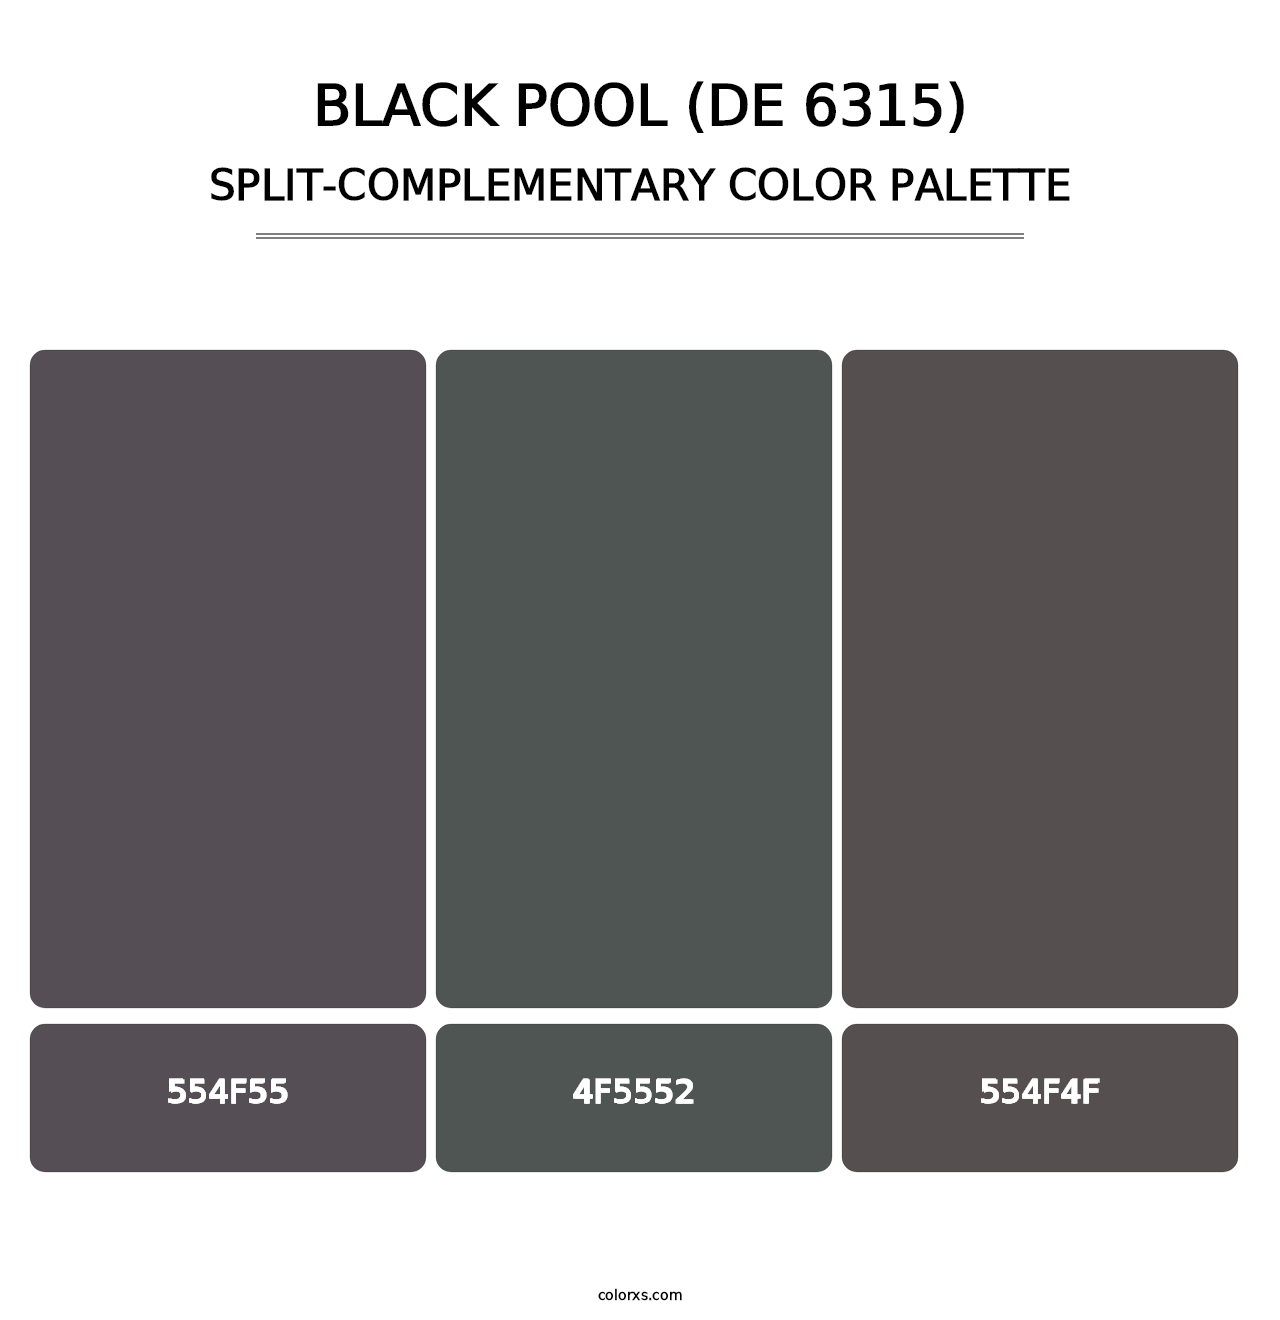 Black Pool (DE 6315) - Split-Complementary Color Palette